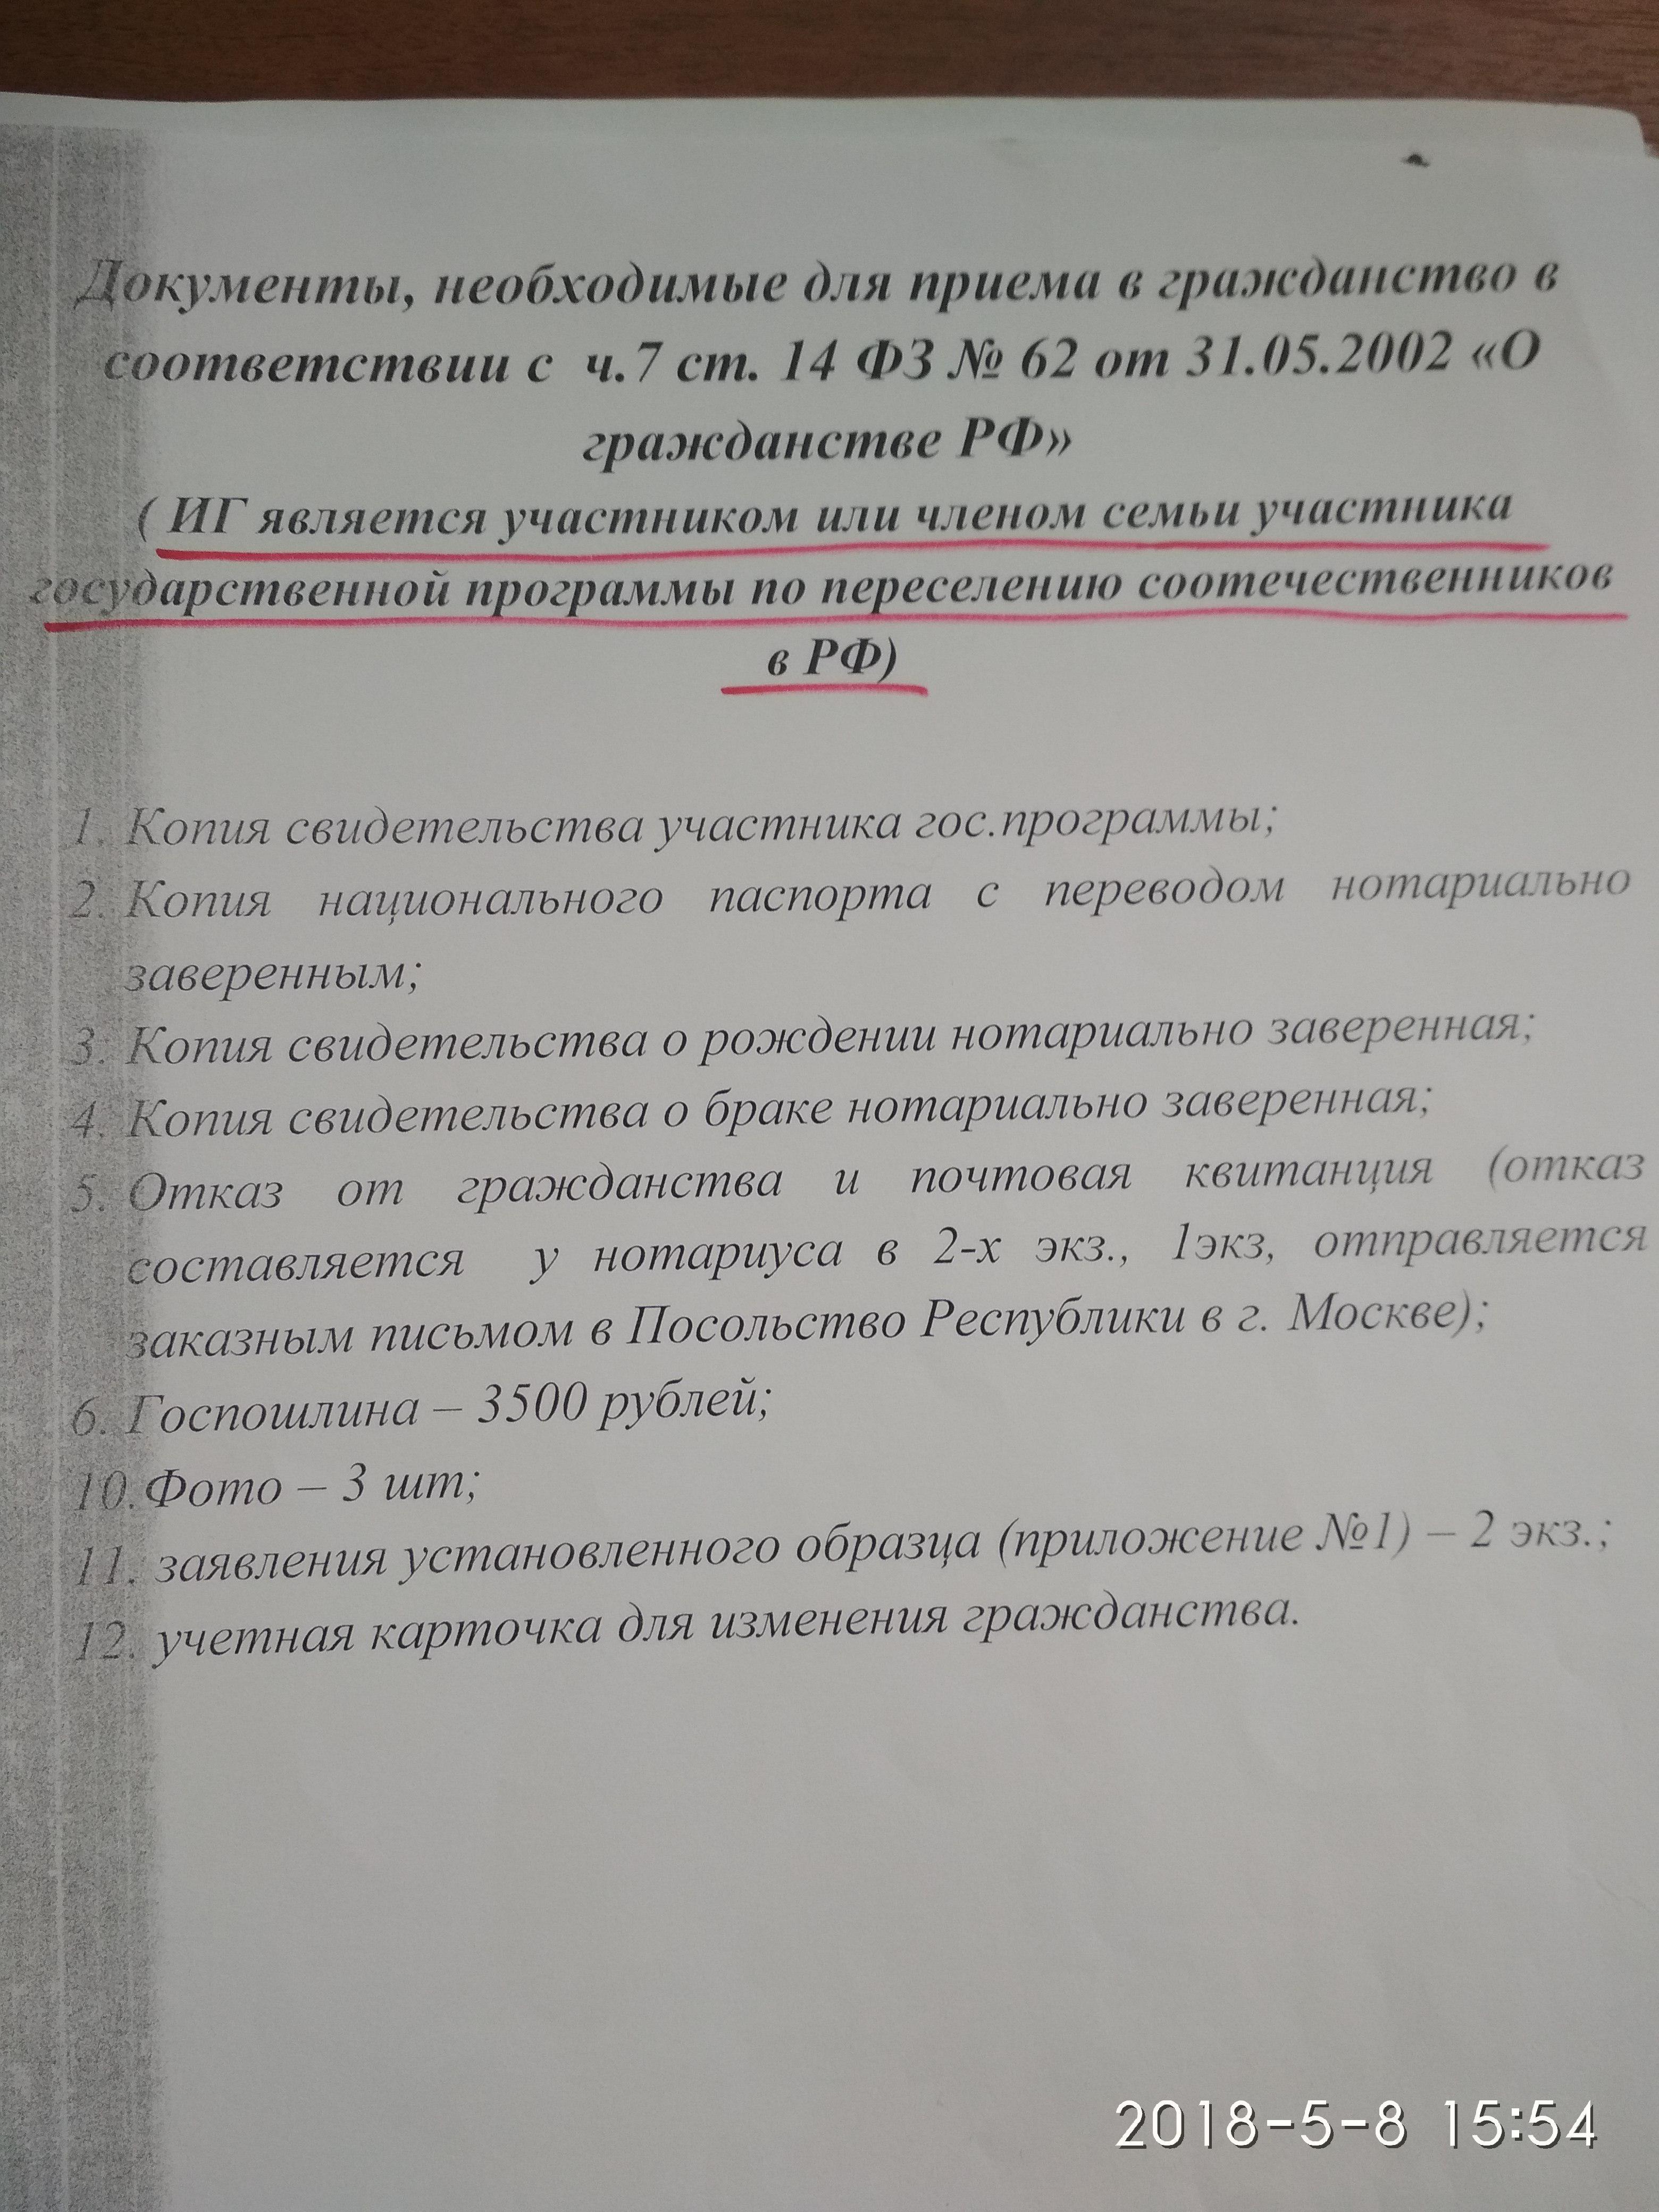 Оформление документов на гражданство РФ по программе переселения